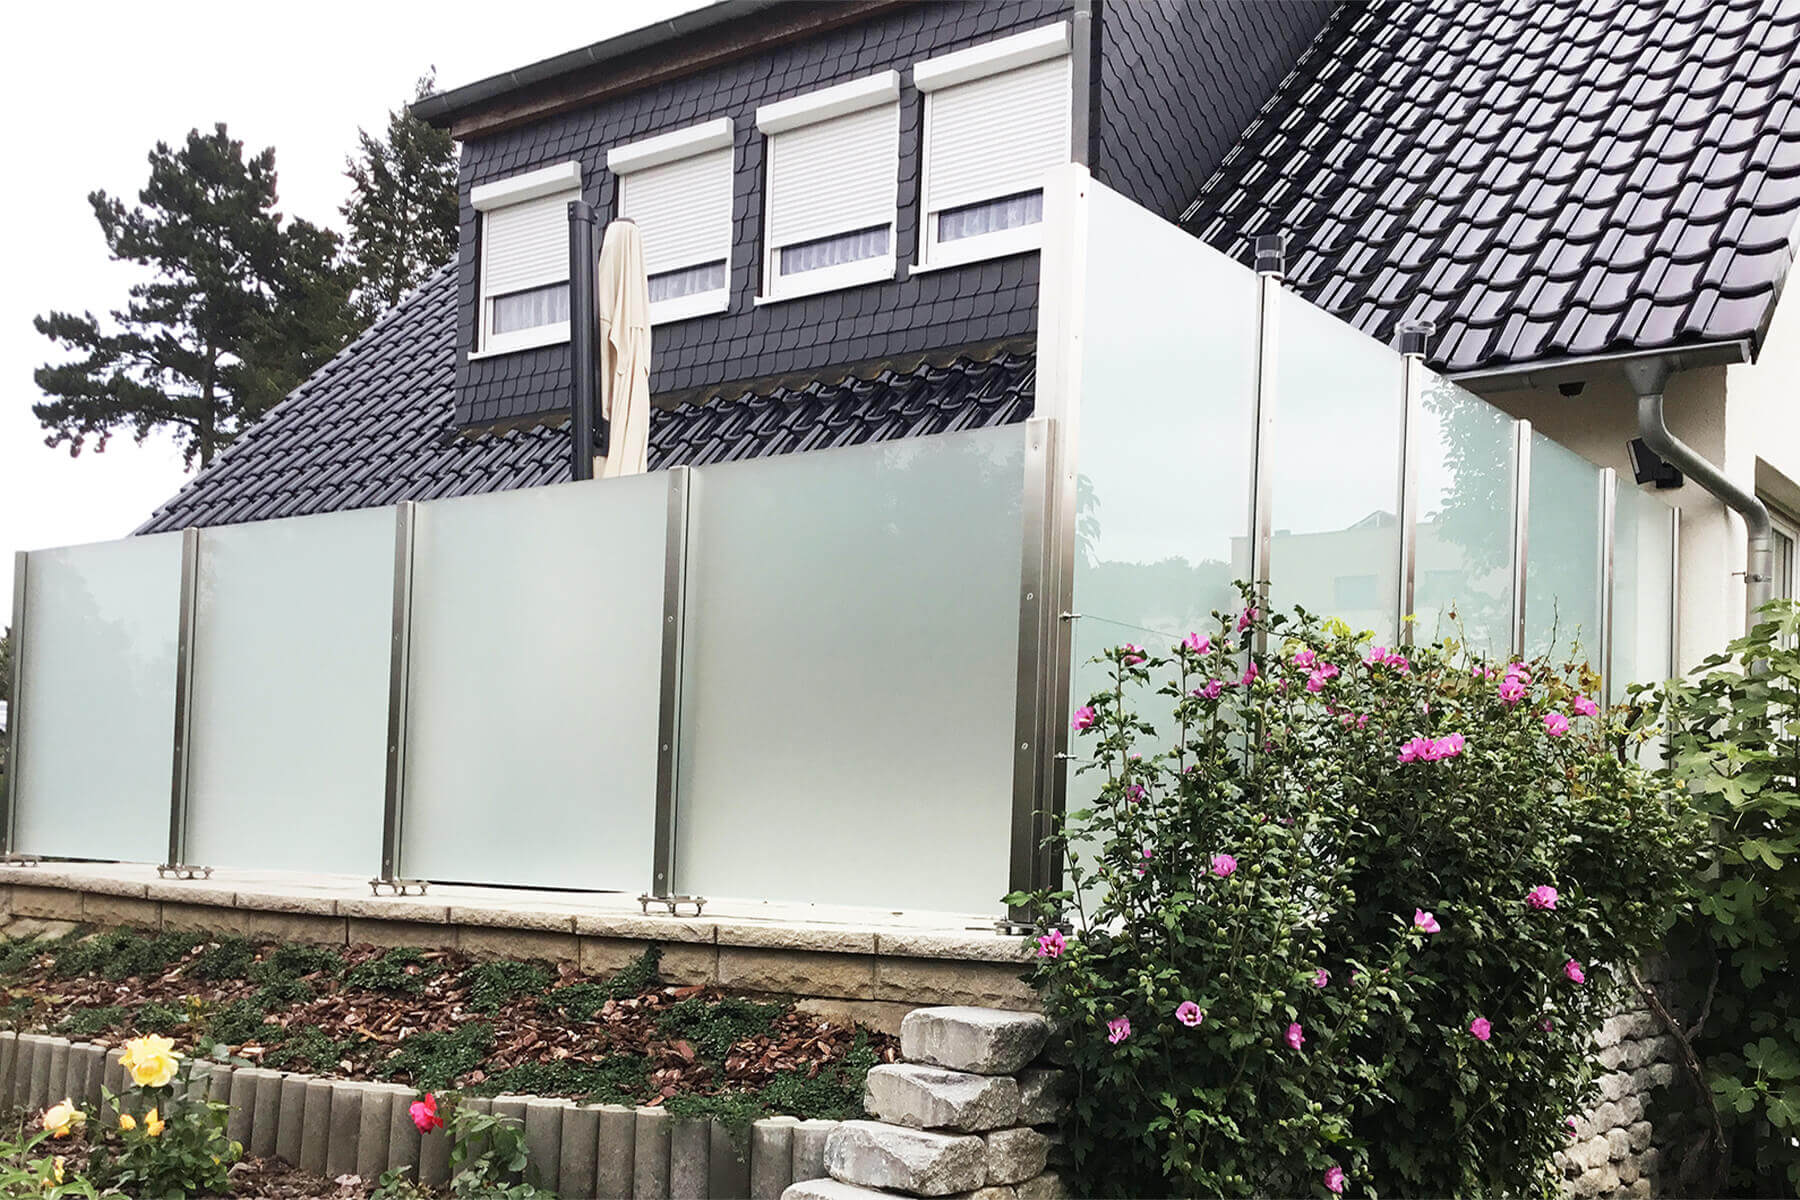 Moderner blickdichter Glaszaun als Wind- und Sichtschutz für den Garten oder Terasse auch geeignet für Untergründe mit Gefälle